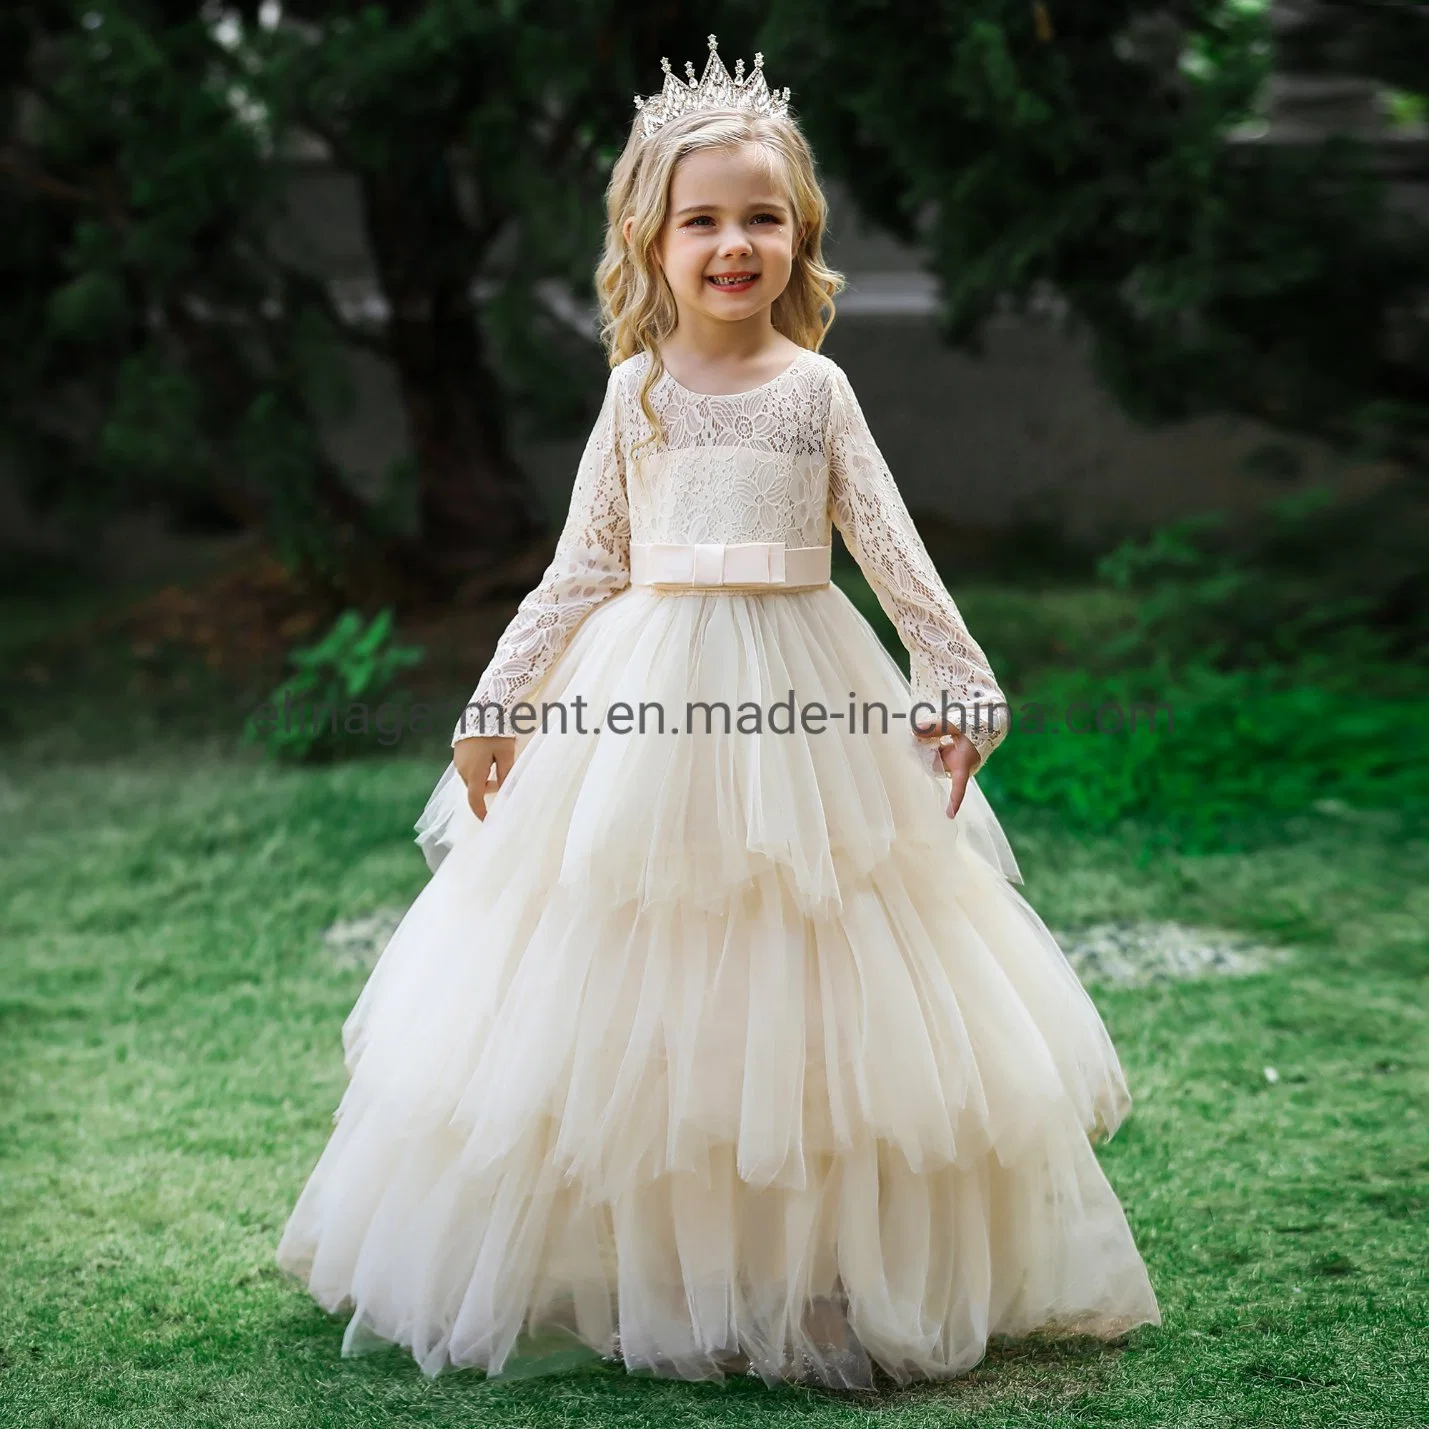 الأطفال ملابس ملابس الأطفال ملابس الأطفال ملابس الأطفال حفل زفاف ملابس الزفاف كعكة الأميرة زخرقة حلوى اللباس